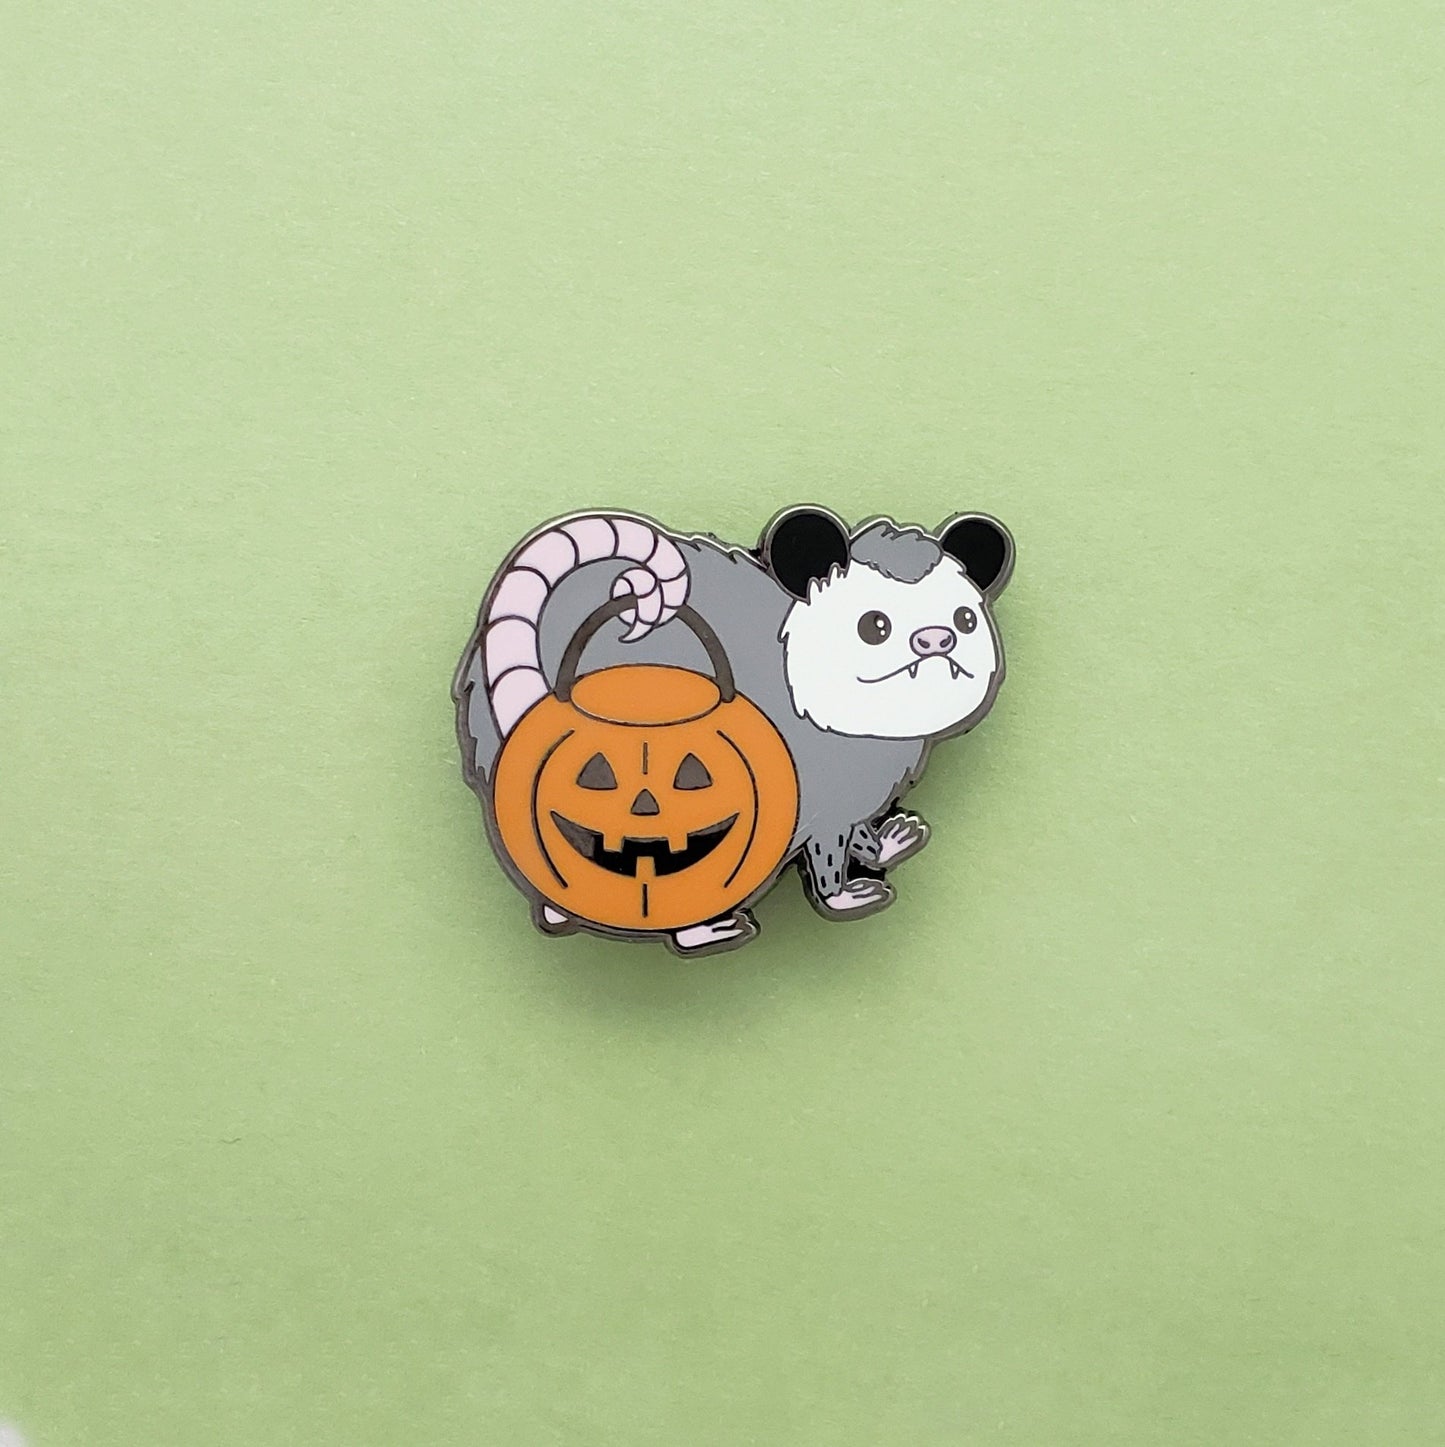 Trick-or-Treat Possum enamel pin // Halloween pin